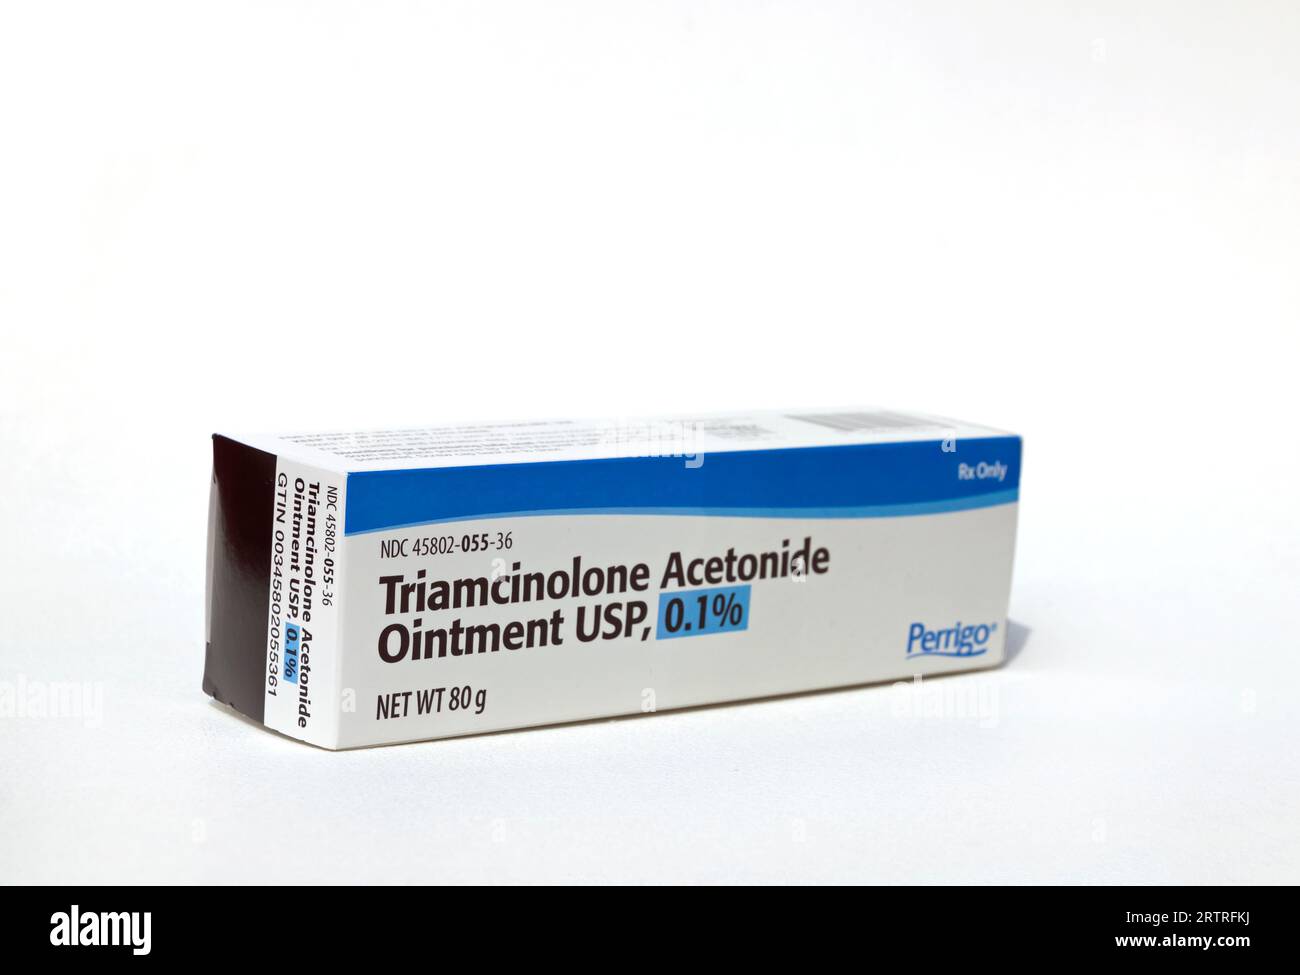 Triamcinolone Acetonide unguento, una prescrizione ad alta potenza, per condizioni della pelle come eczema, dermatite, eruzione cutanea, prurito, gonfiore, arrossamento. Foto Stock